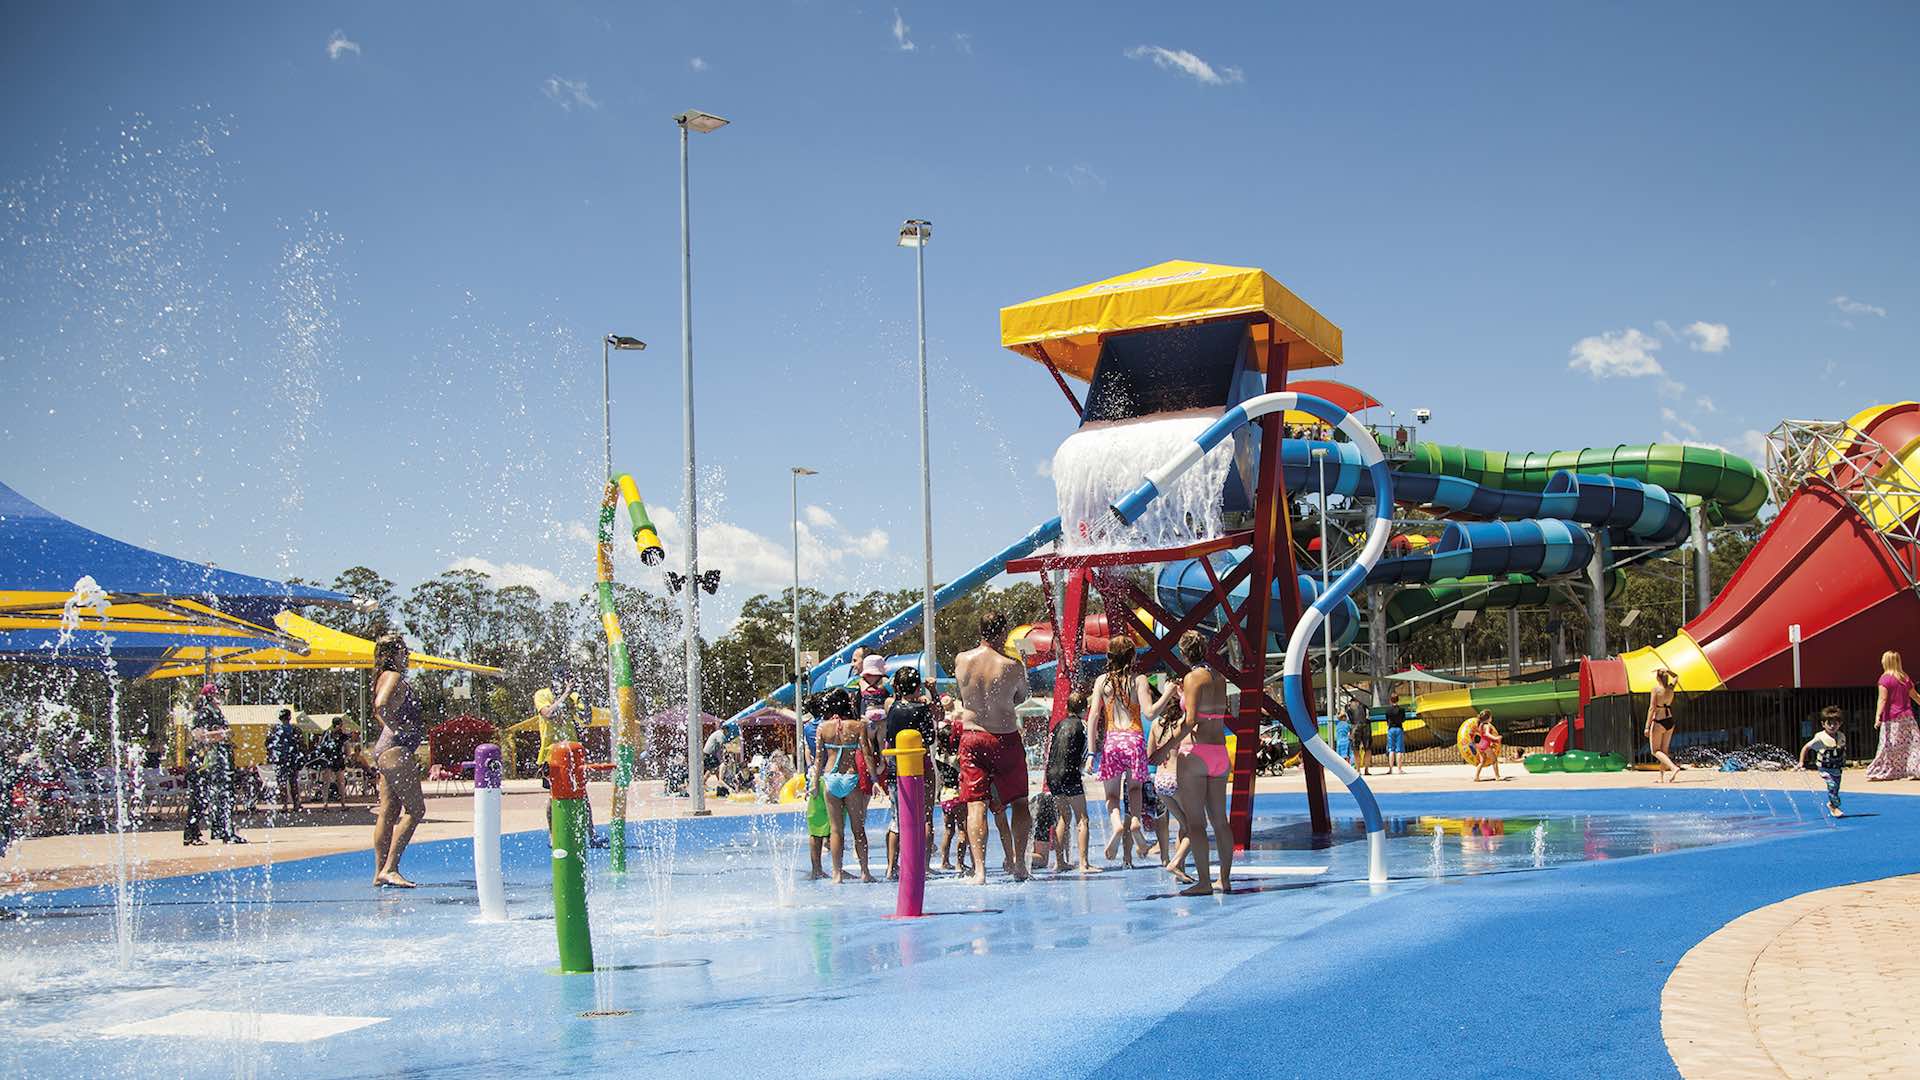 Wet n Wild kids splash zone in Sydney